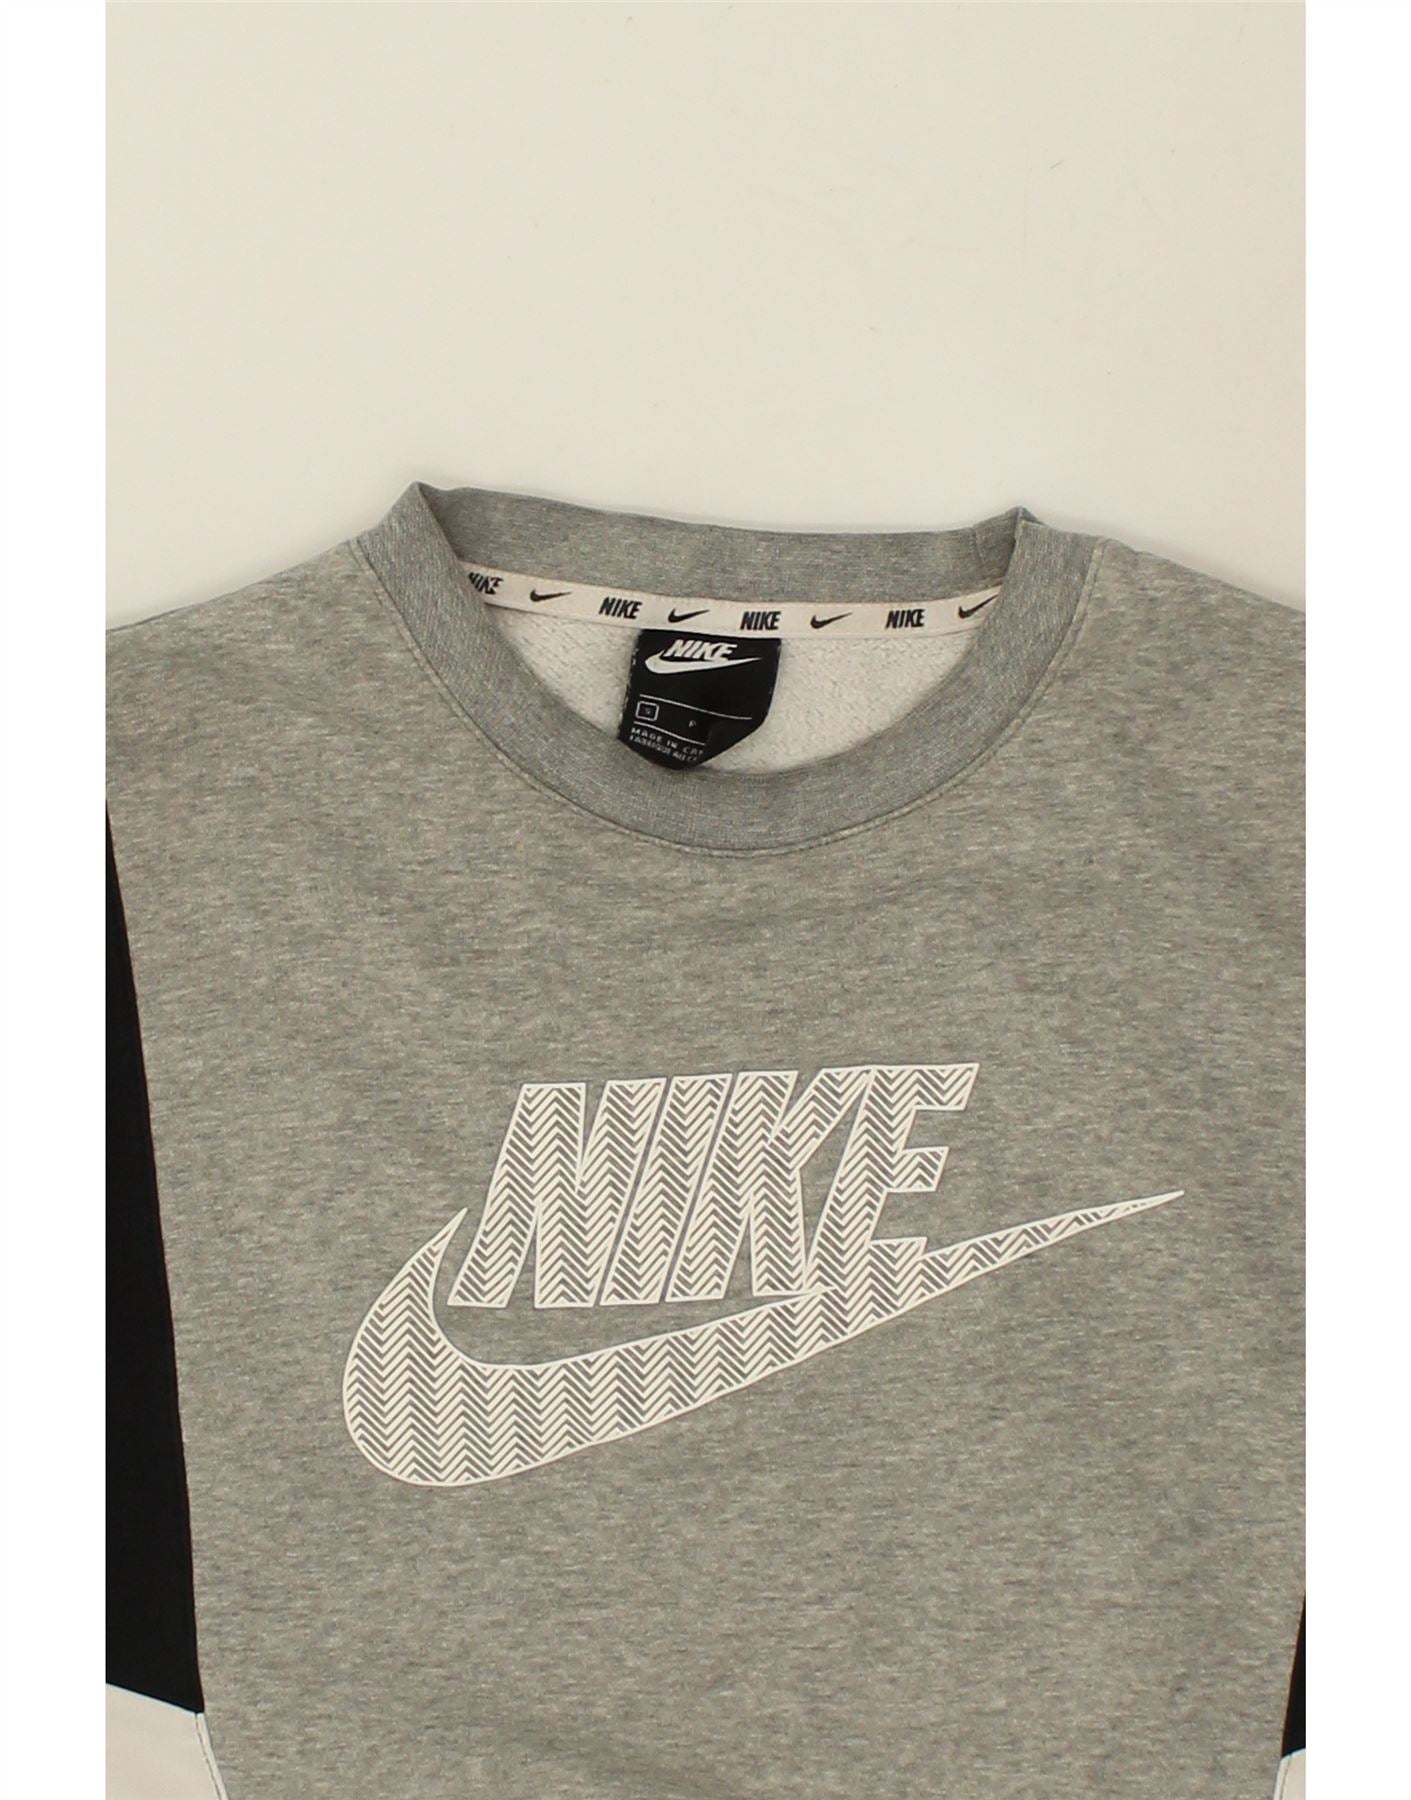 Мужской свитер NIKE с графическим рисунком, маленький серый хлопковый джемпер с цветными блоками | Винтажные Найки | Бережливость | Подержанные Nike | Одежда б/у | Мессина Хембри